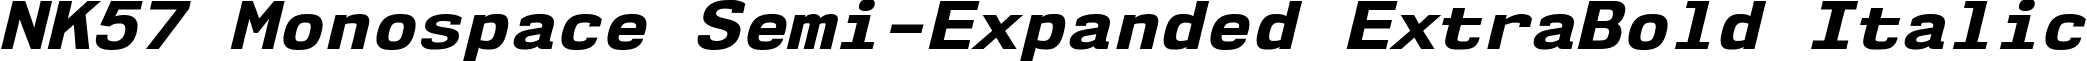 NK57 Monospace Semi-Expanded ExtraBold Italic font - nk57-monospace.semi-expanded-extrabold-italic.ttf